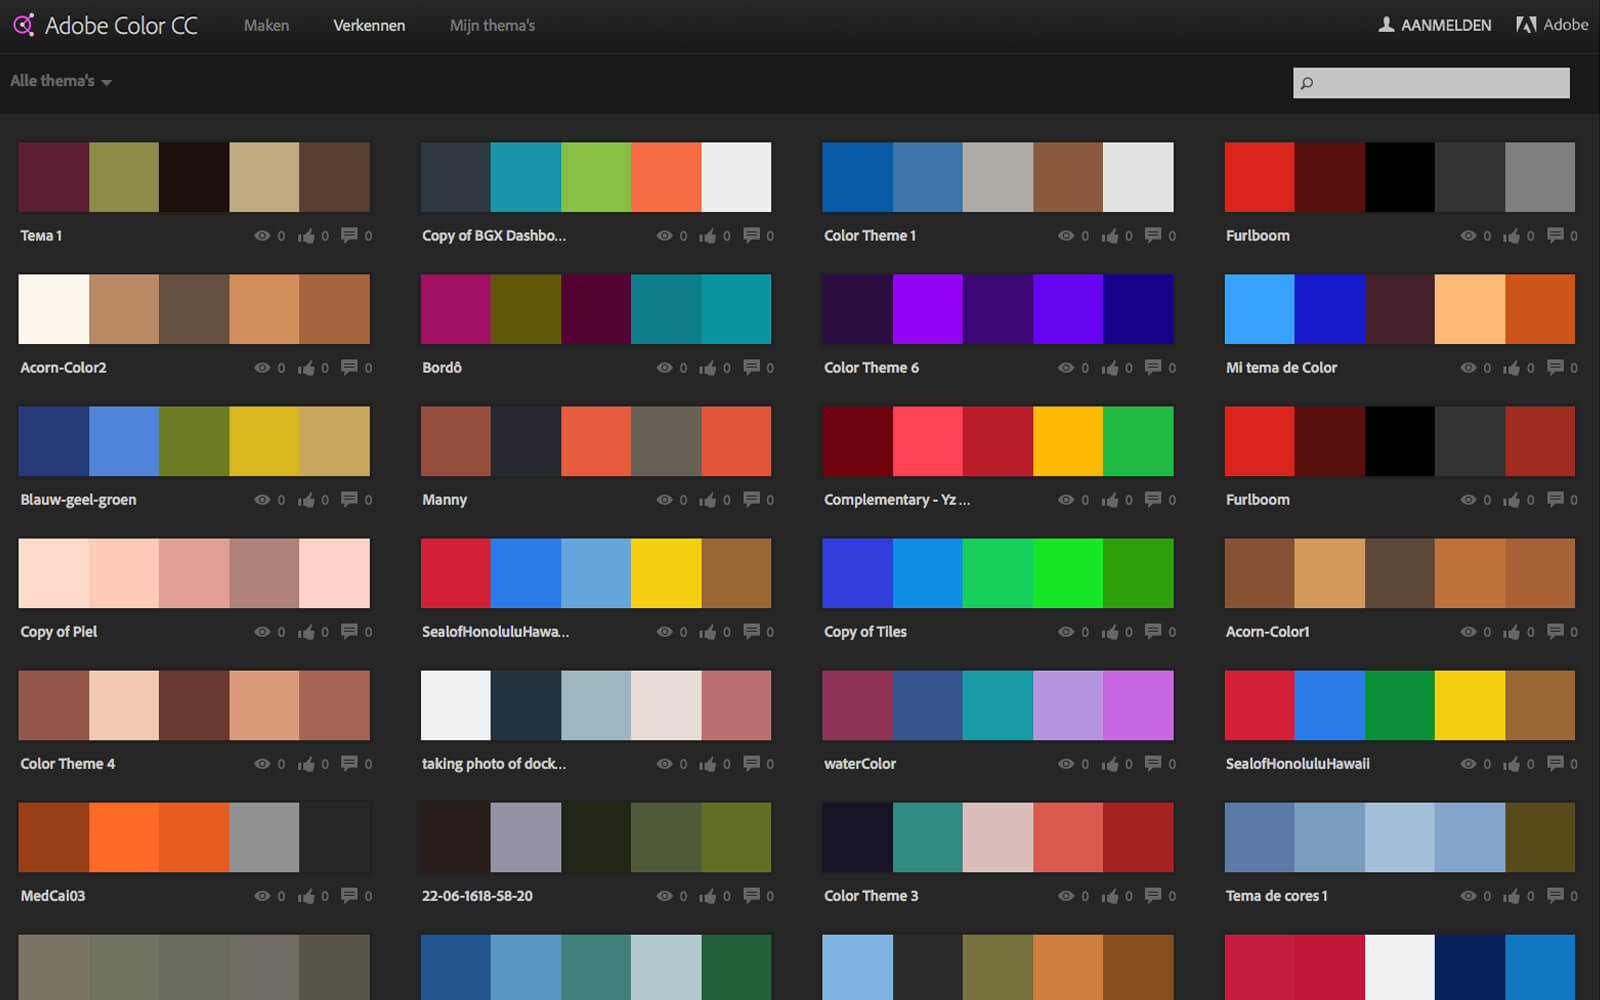 Groenten het kan bladzijde De 5 handigste tools voor de perfecte kleurenschema's – Femke blogt